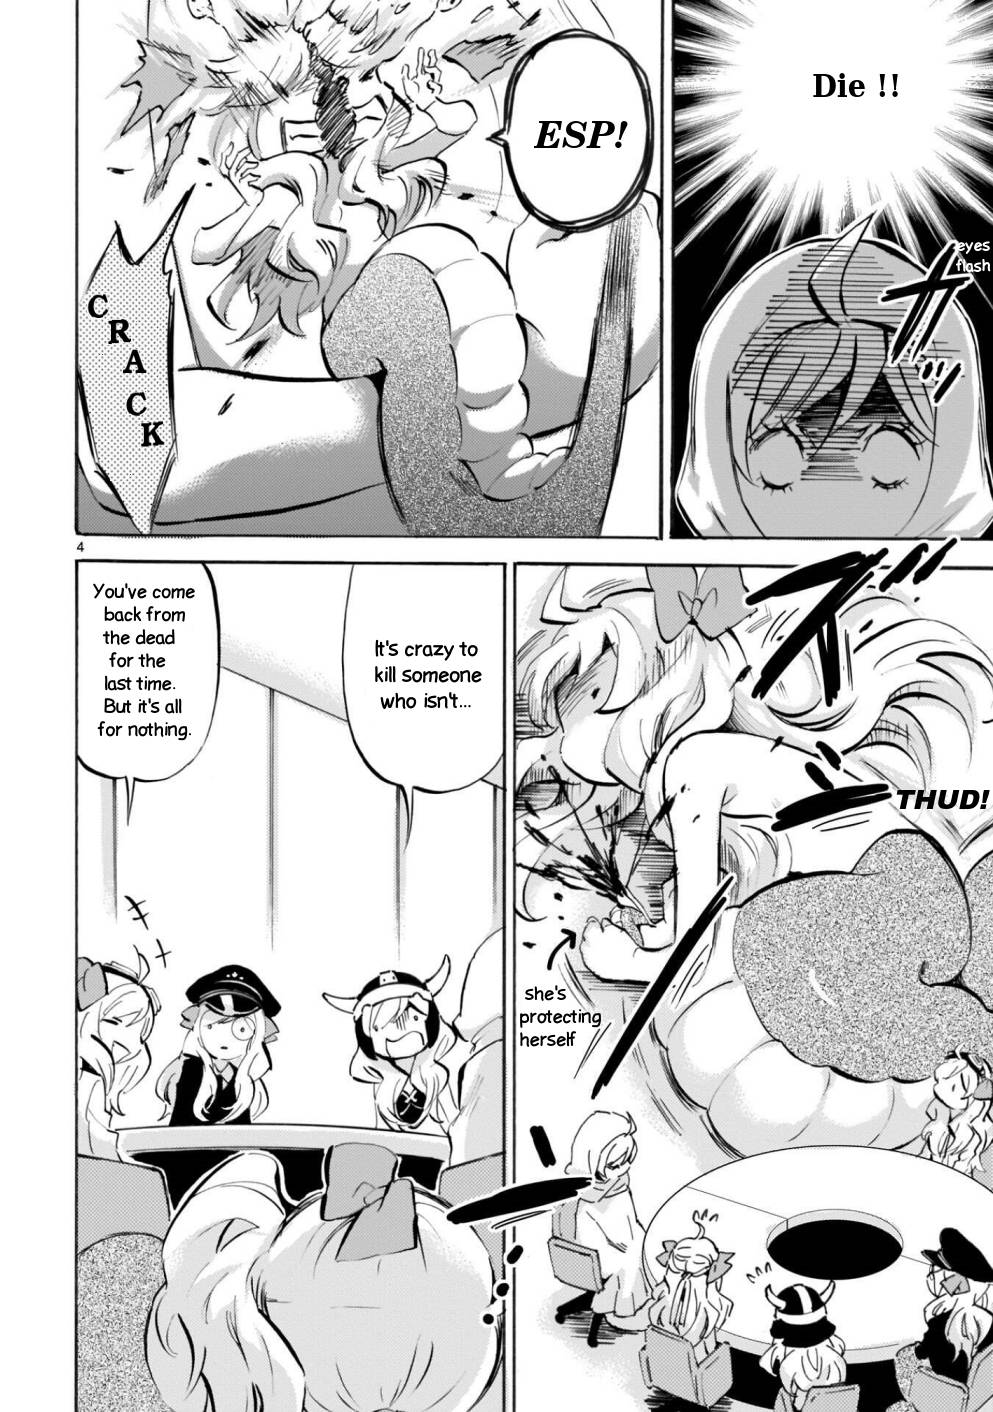 Jashin-chan Dropkick chapter 174 page 4